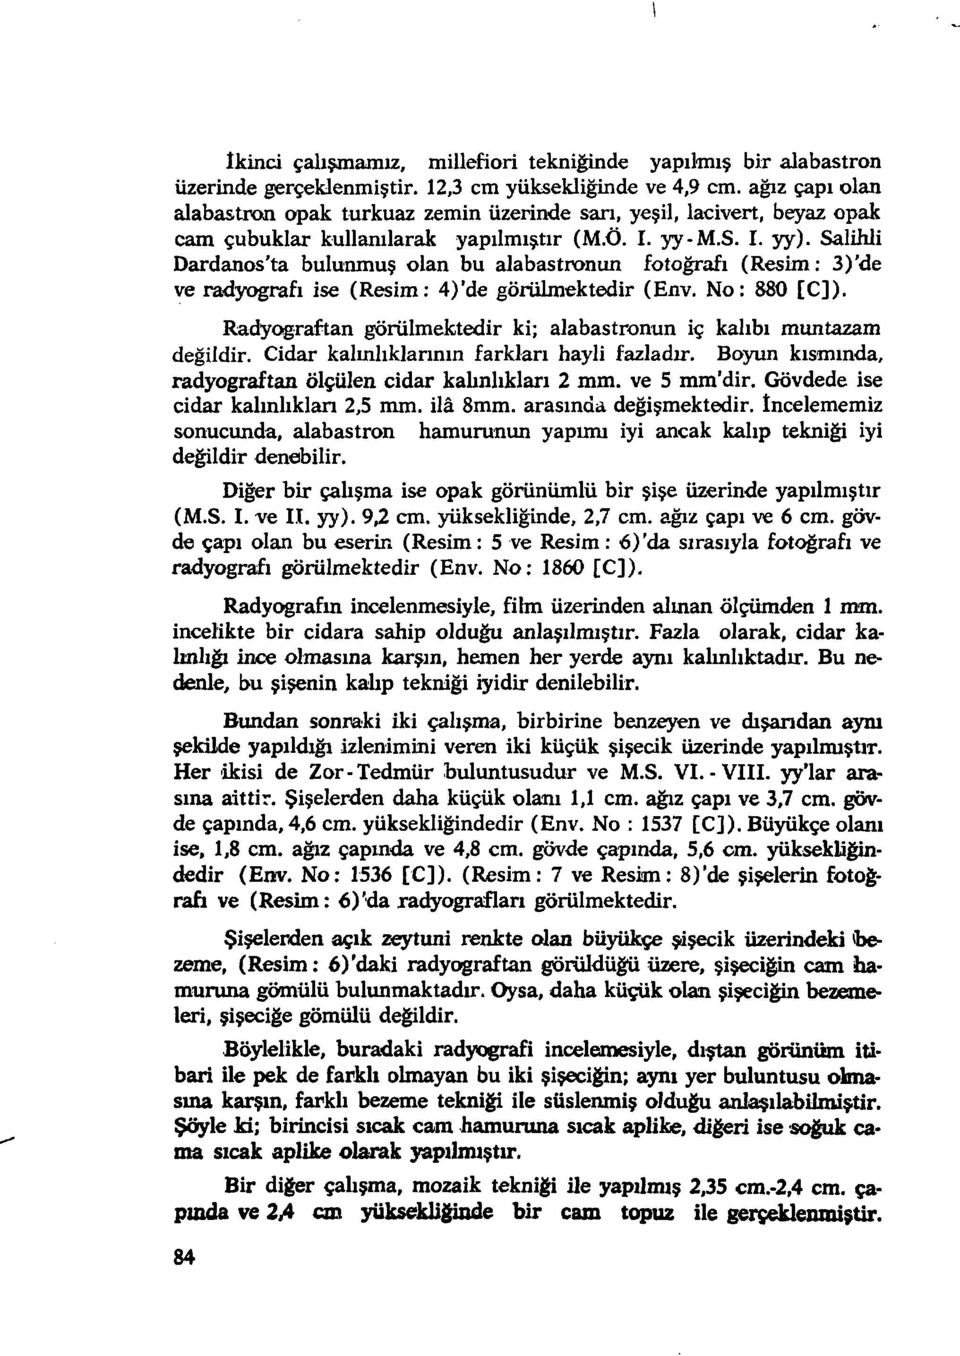 Salihli Dardanos'ta bulunmuş olan bu alabastronun (Resim: 3)'de ve radyografi ise (Resim: 4)'de görülmektedir (Env, No: 880 [C]).